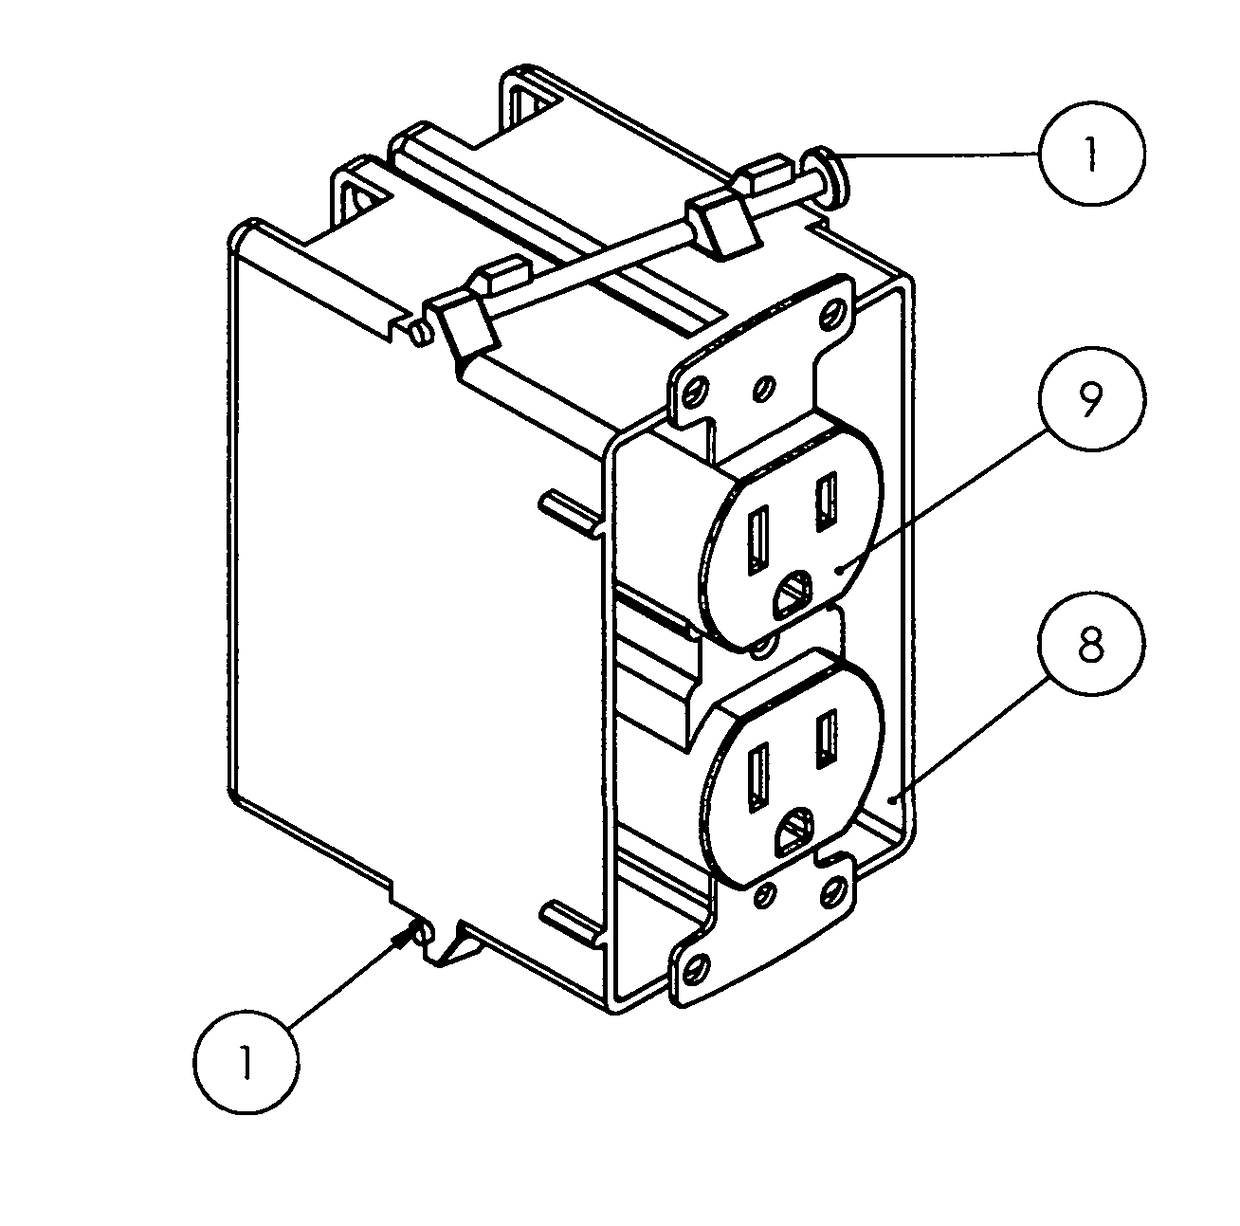 Electrical box, electrical switch & electrical plug-in mechanism